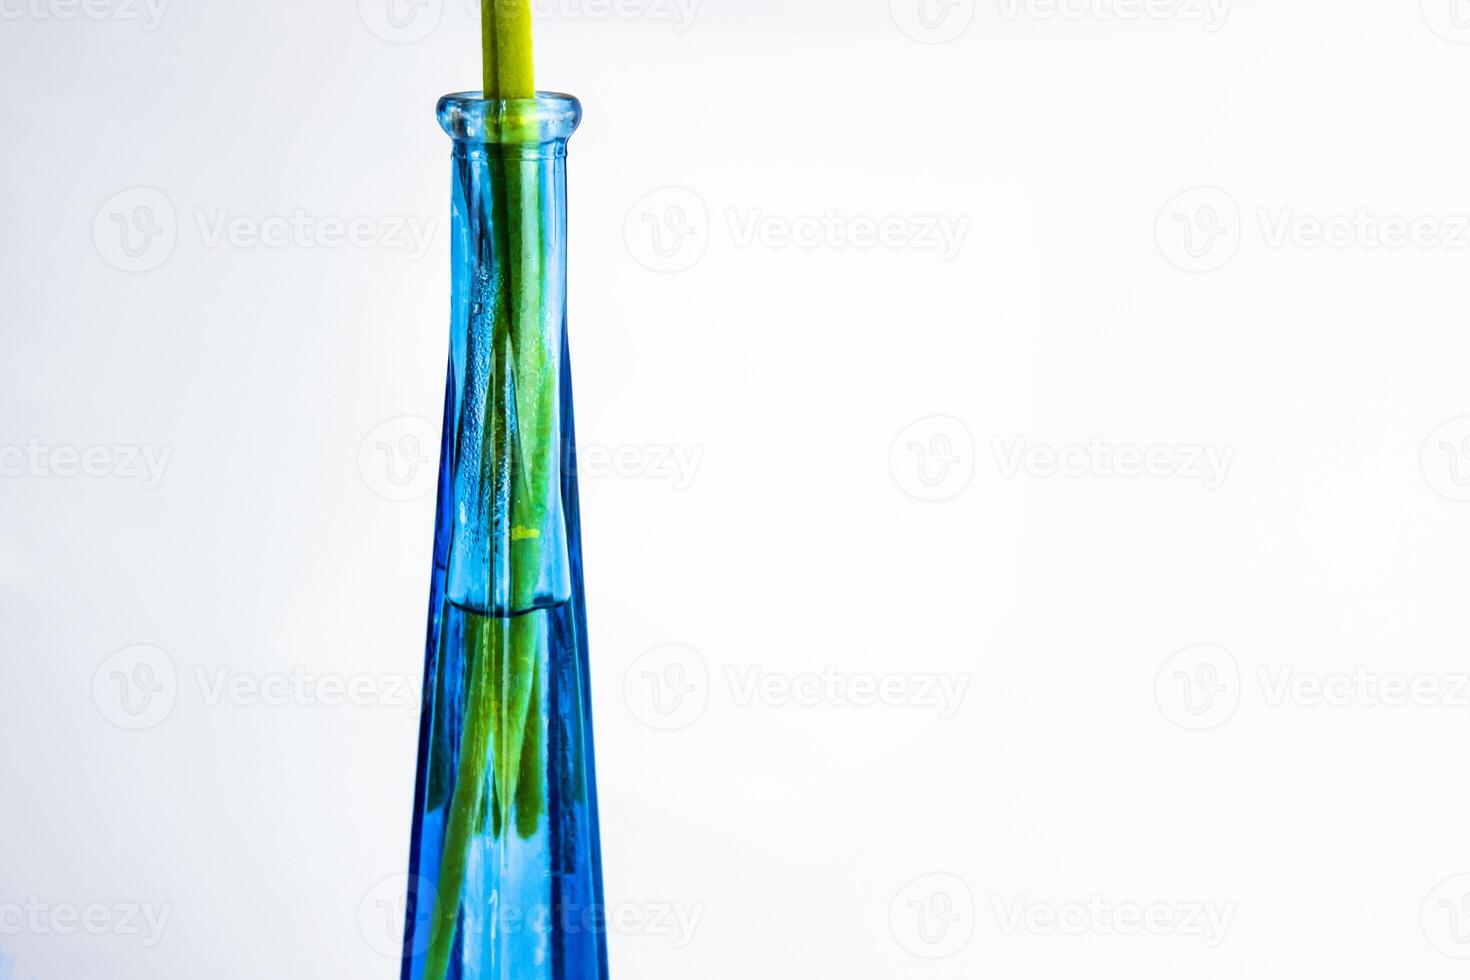 fechar-se do lindo moderno flor vaso isolado em branco fundo com verde flor hastes dentro a água. cortada detalhe do real azul vidro garrafa com limitar gargalo. moderno Projeto. cópia de espaço foto